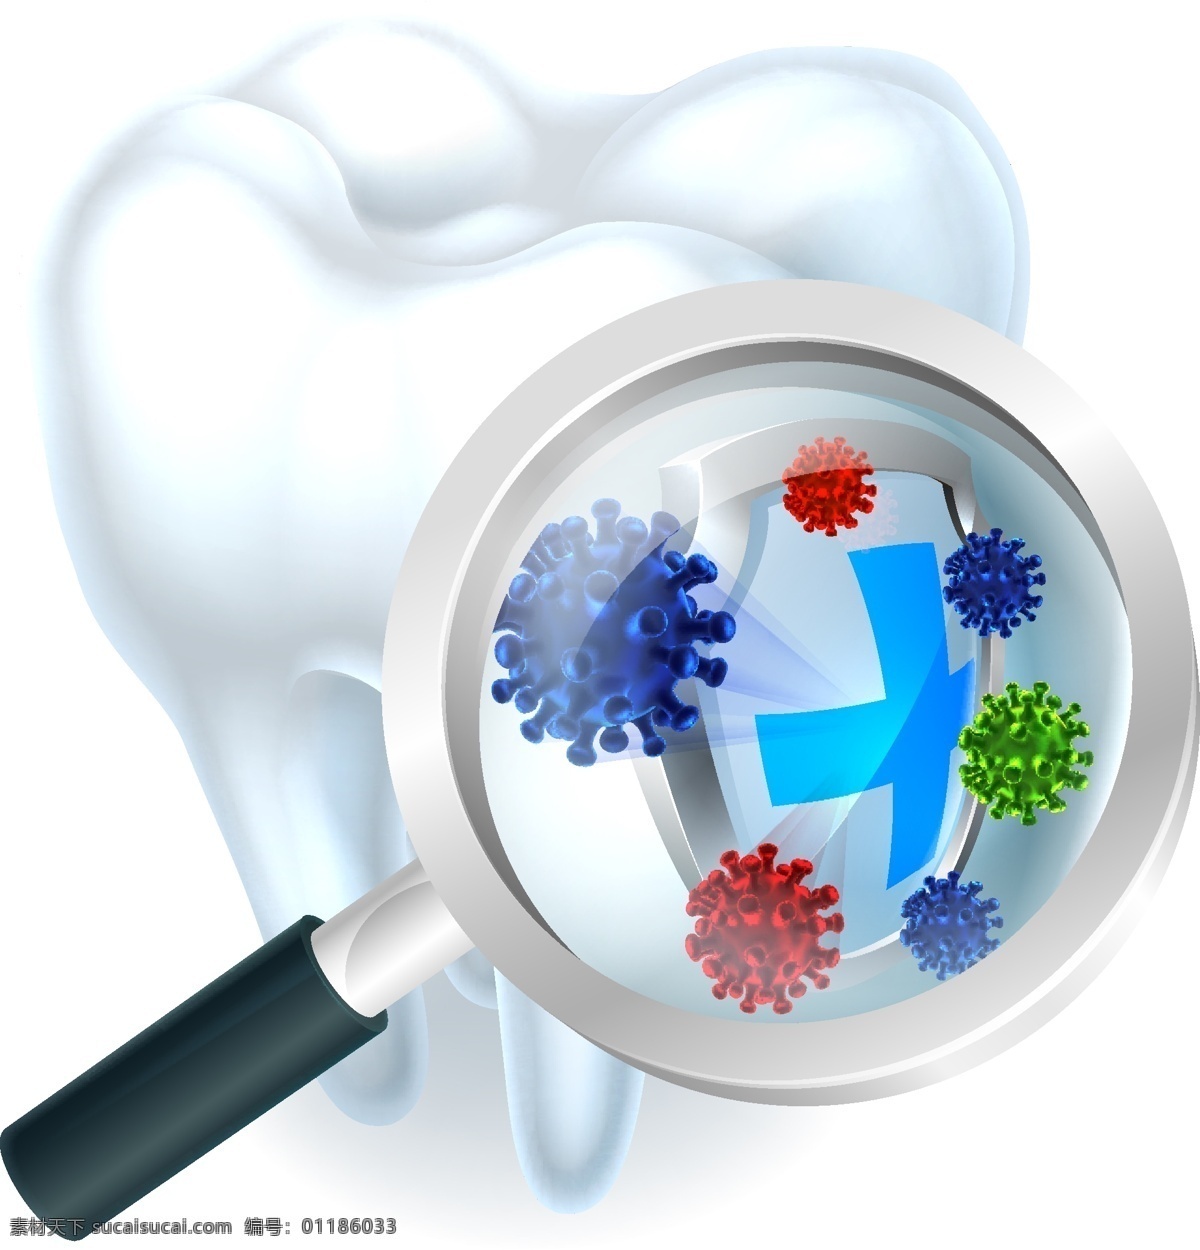 放大镜 里 牙齿 上 盾牌 细菌 洁白的牙齿 牙齿模型 牙龈 立体牙齿 牙龈模型 现代科技 医疗护理